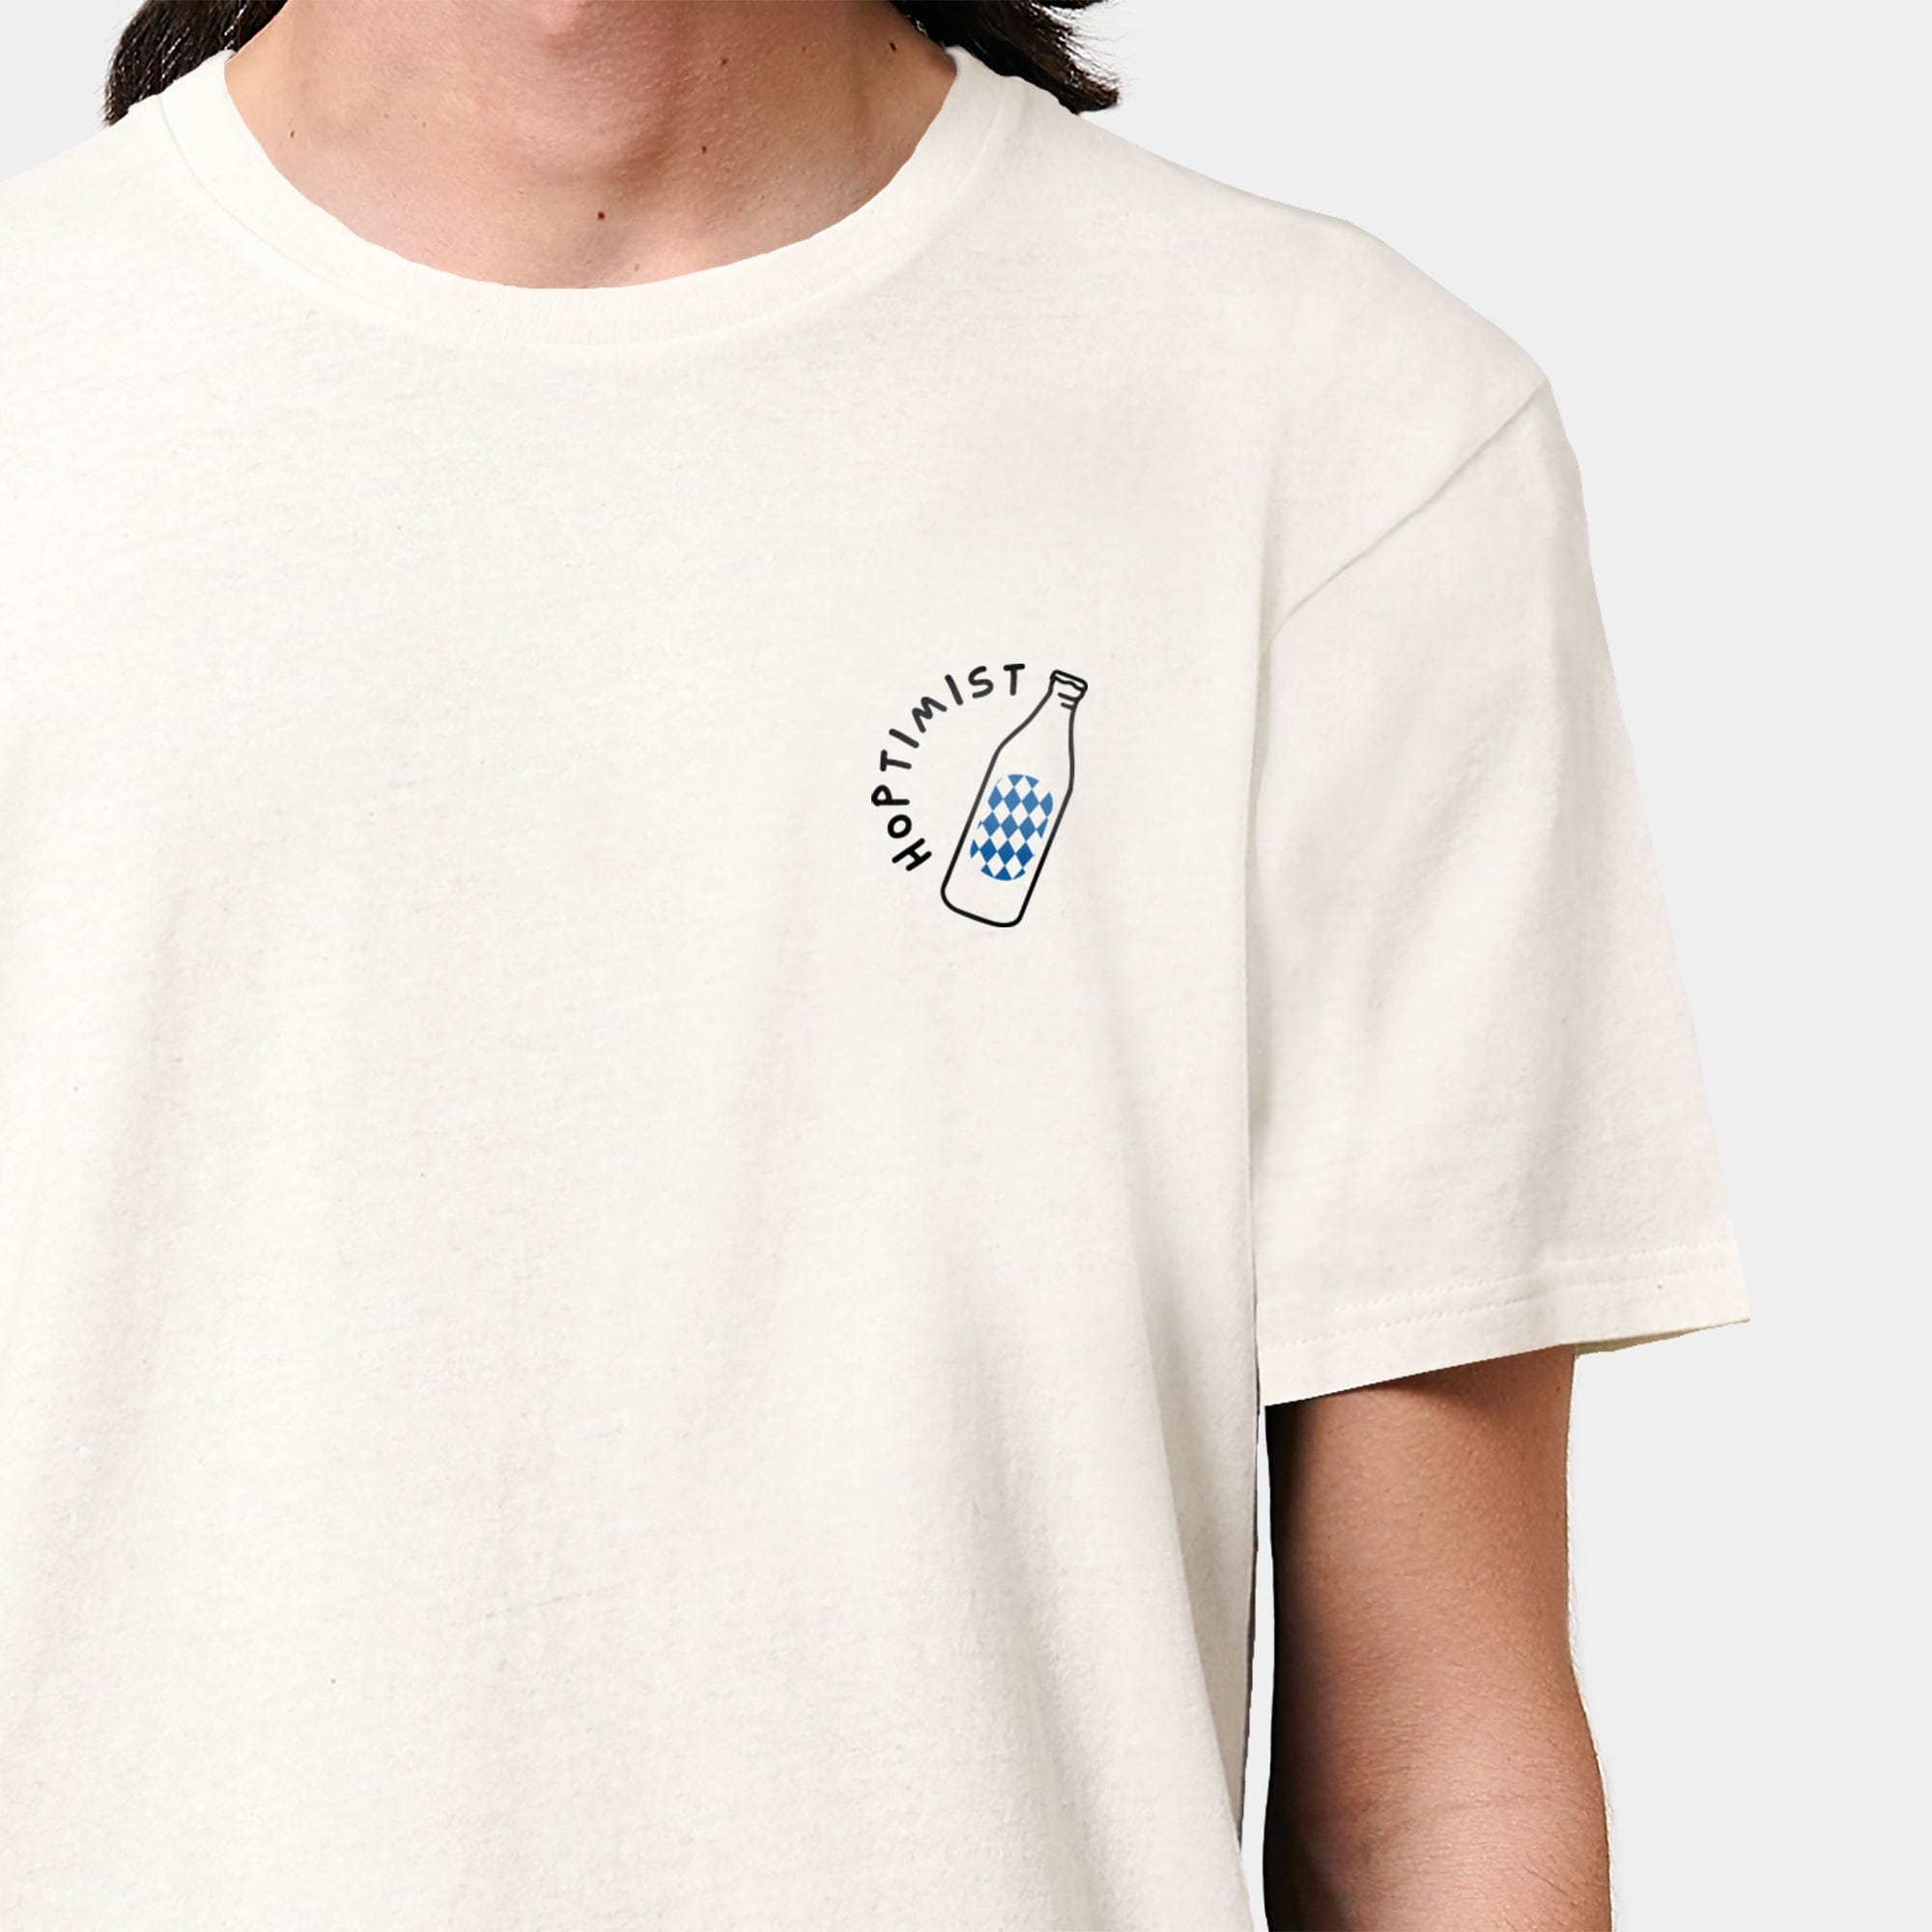 HEITER & LÄSSIG T-Shirt "Hoptimist" XXS / RE-weiß - aus nachhaltiger und fairer Produktion